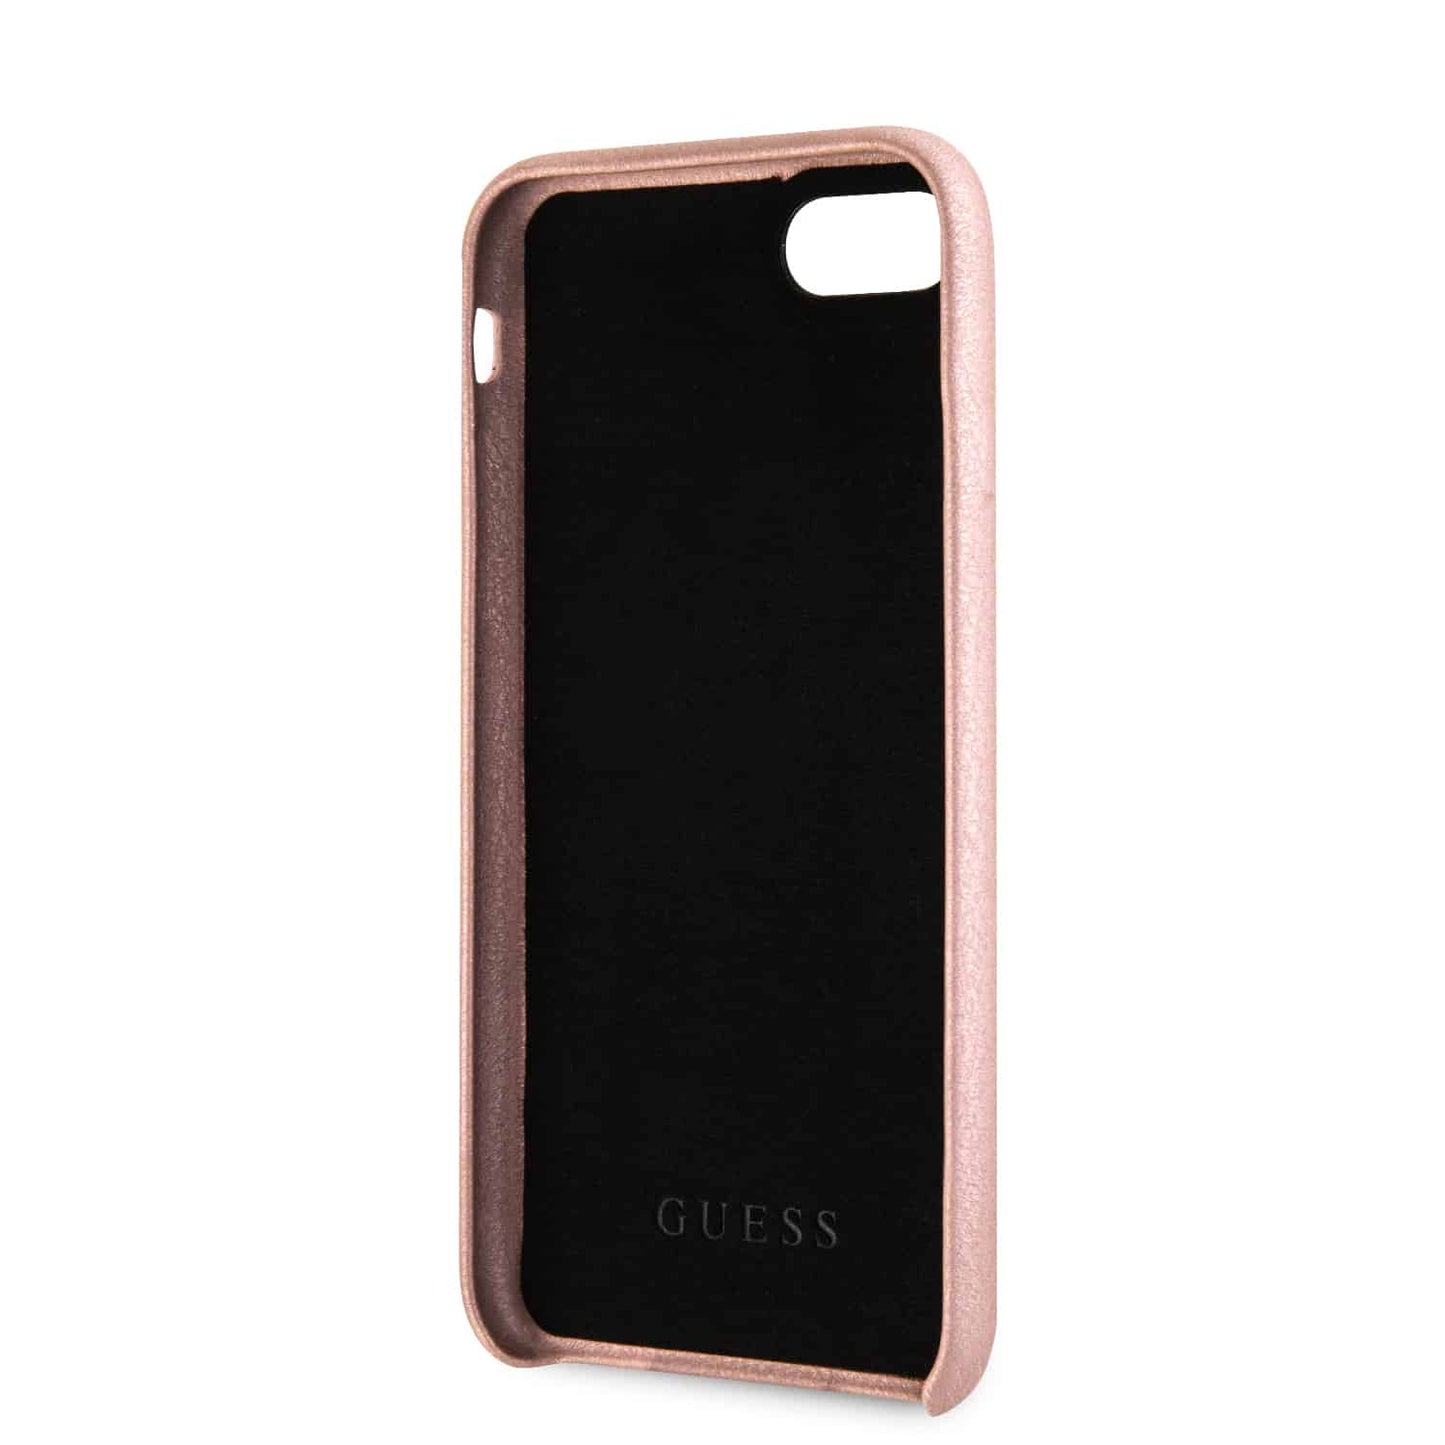 Guess Backcover met strap voor de iPhone SE (2022/2020) iPhone 8/ iPhone 7 - Roze